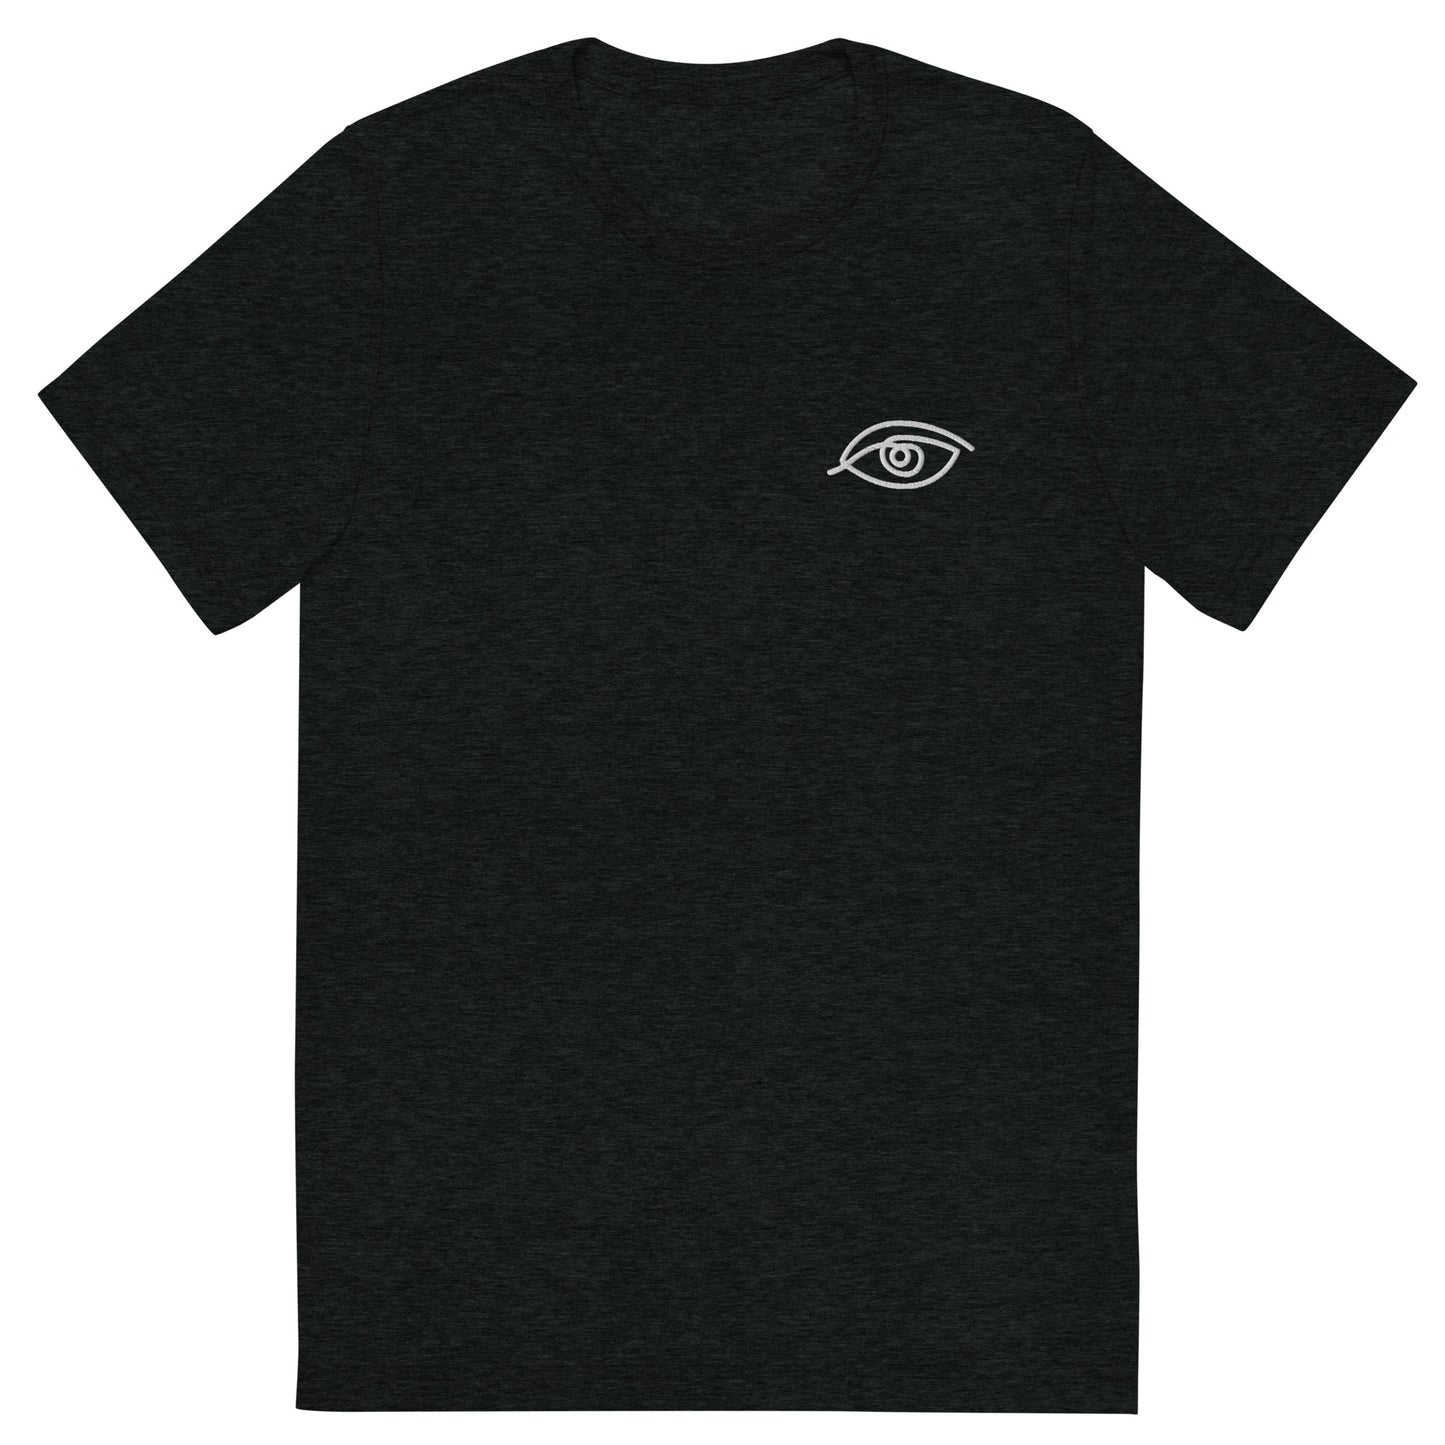 "Side eye" men's t-shirt